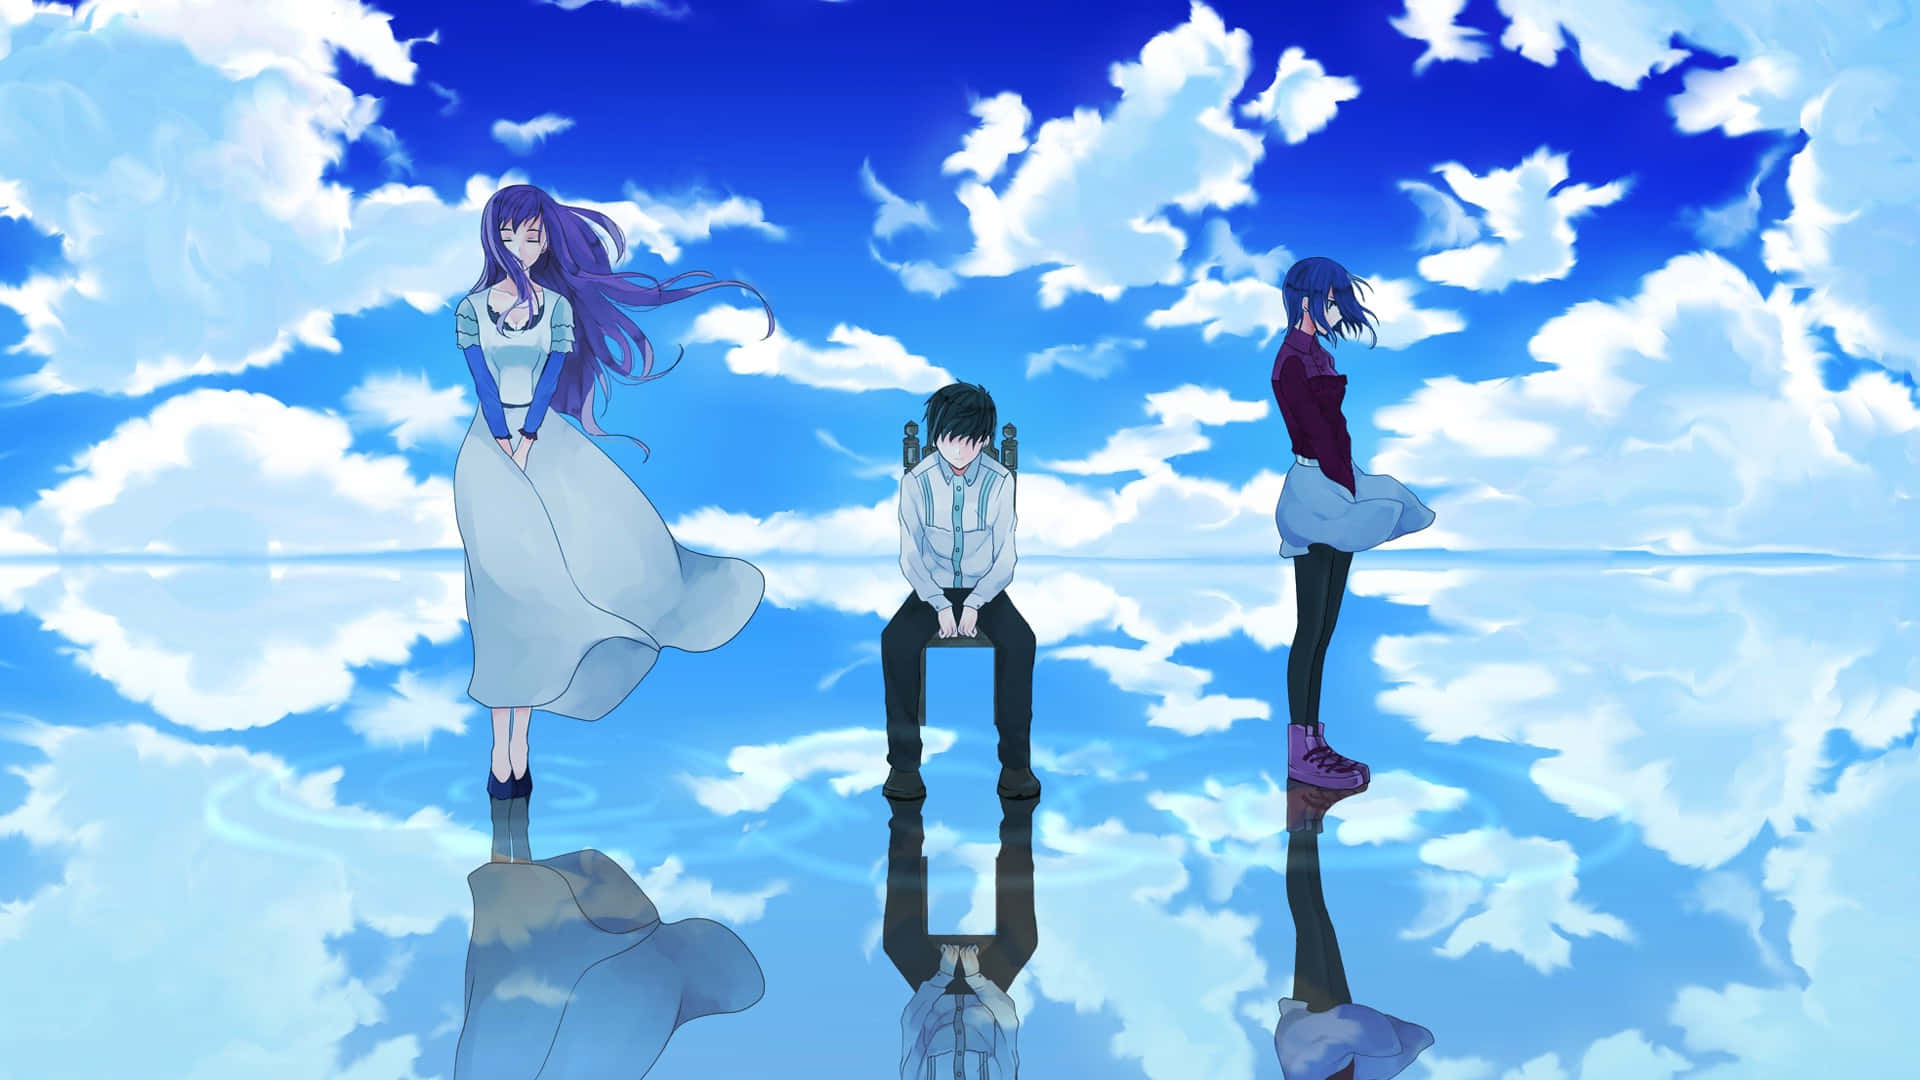 Reach for the sky in Anime Sky!